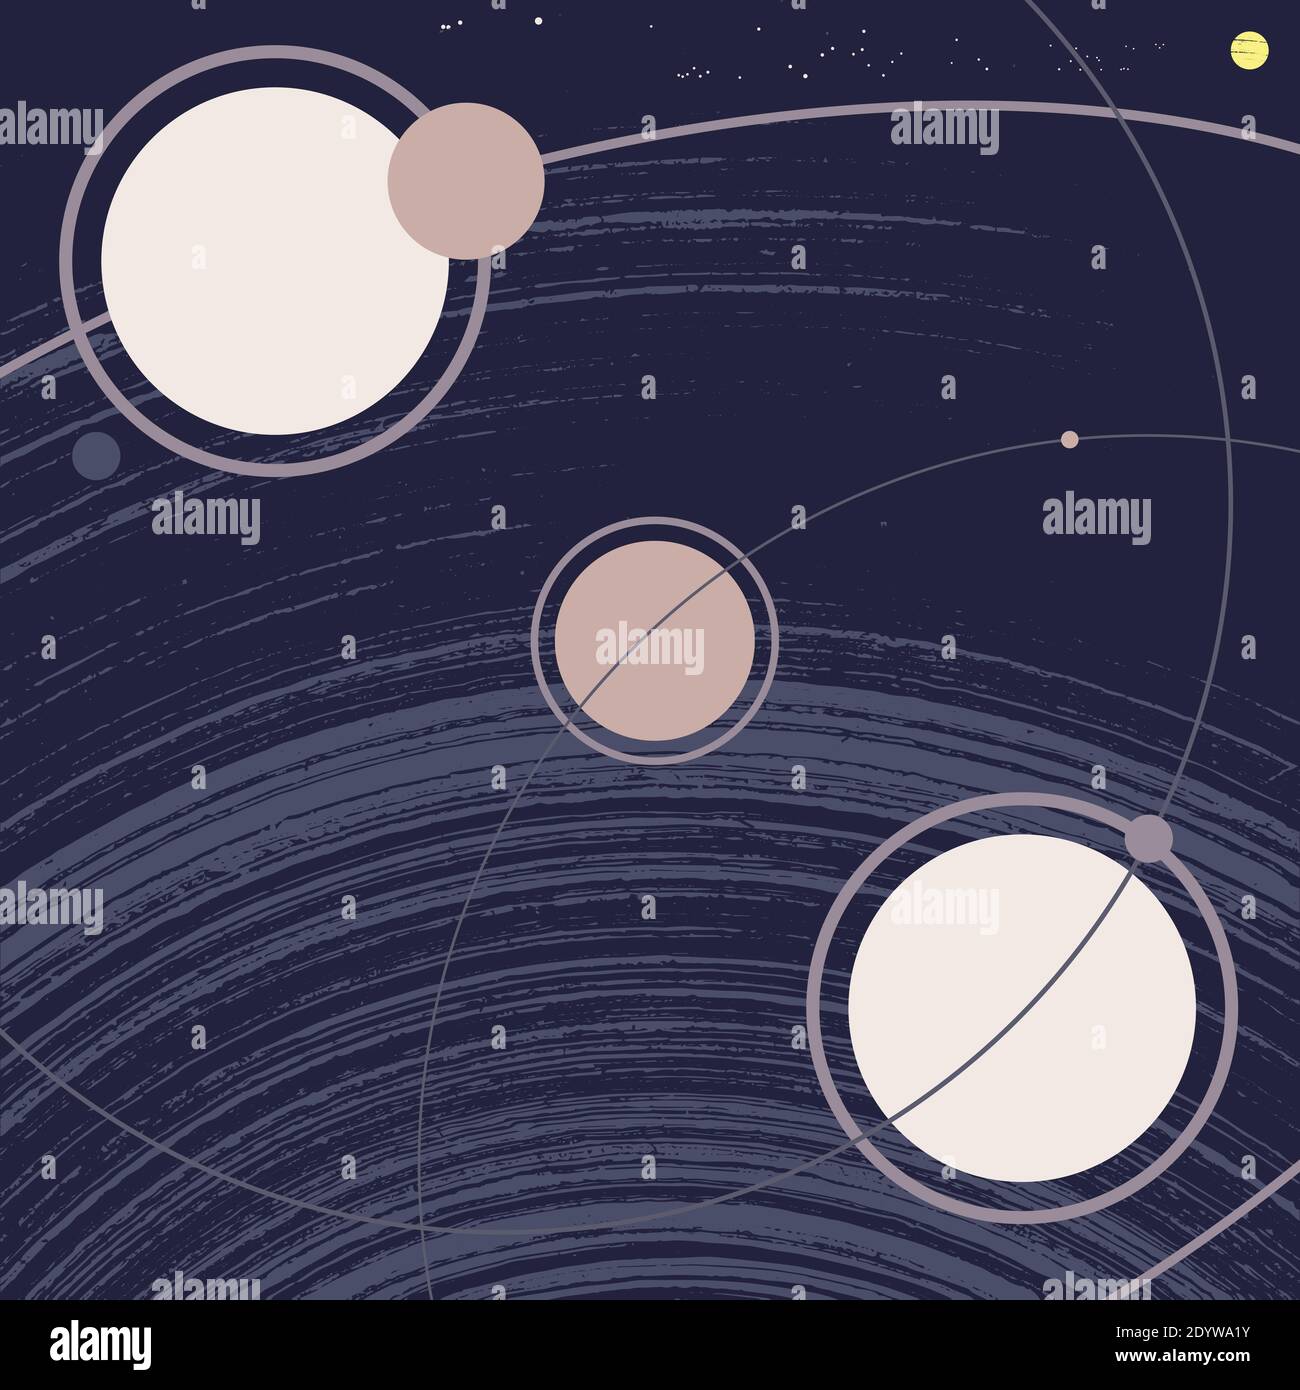 Weltraumgalaxie mit Planeten, Umlaufbahnen, Satelliten, Monden, Sonne und Sternen. Retro-Stil Grunge Vektor-Illustration. Klassisches, minimalistisches Poster Stockfoto